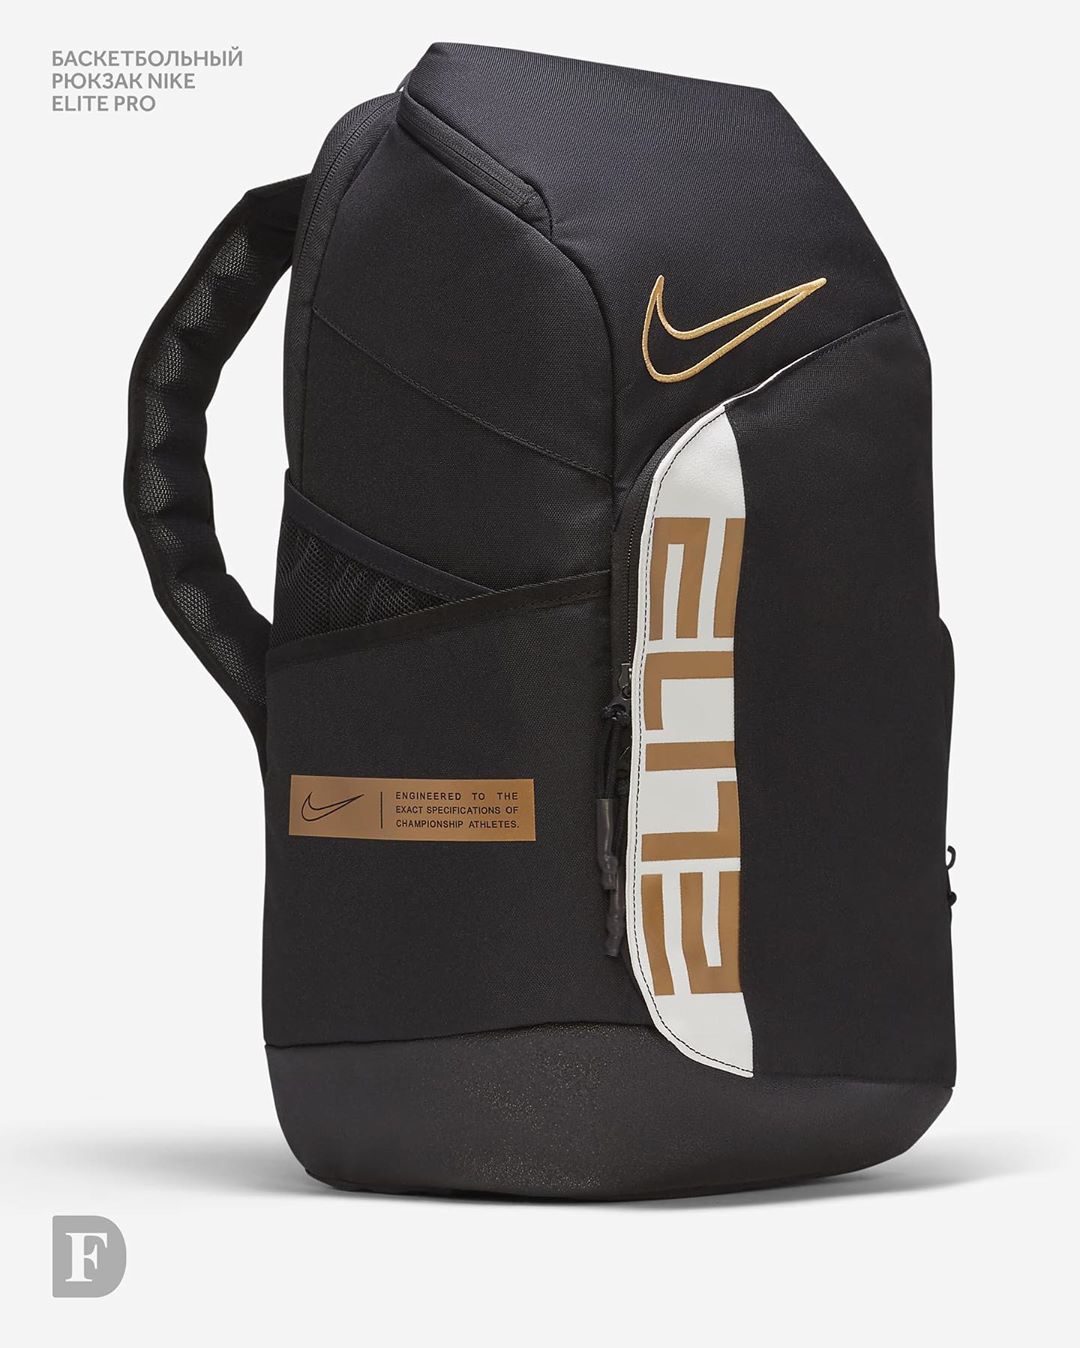 𝐅𝐔𝐍𝐊𝐘 𝐃𝐔𝐍𝐊𝐘 - Рюкзак Nike Elite Pro / 4690₽
⠀
Рюкзак для баскетбола. Коллекция Elite Pro. Конструкция сумки-дафл: возможность носить как рюкзак или сумку. Вместительный внутренний отсек для кроссово...